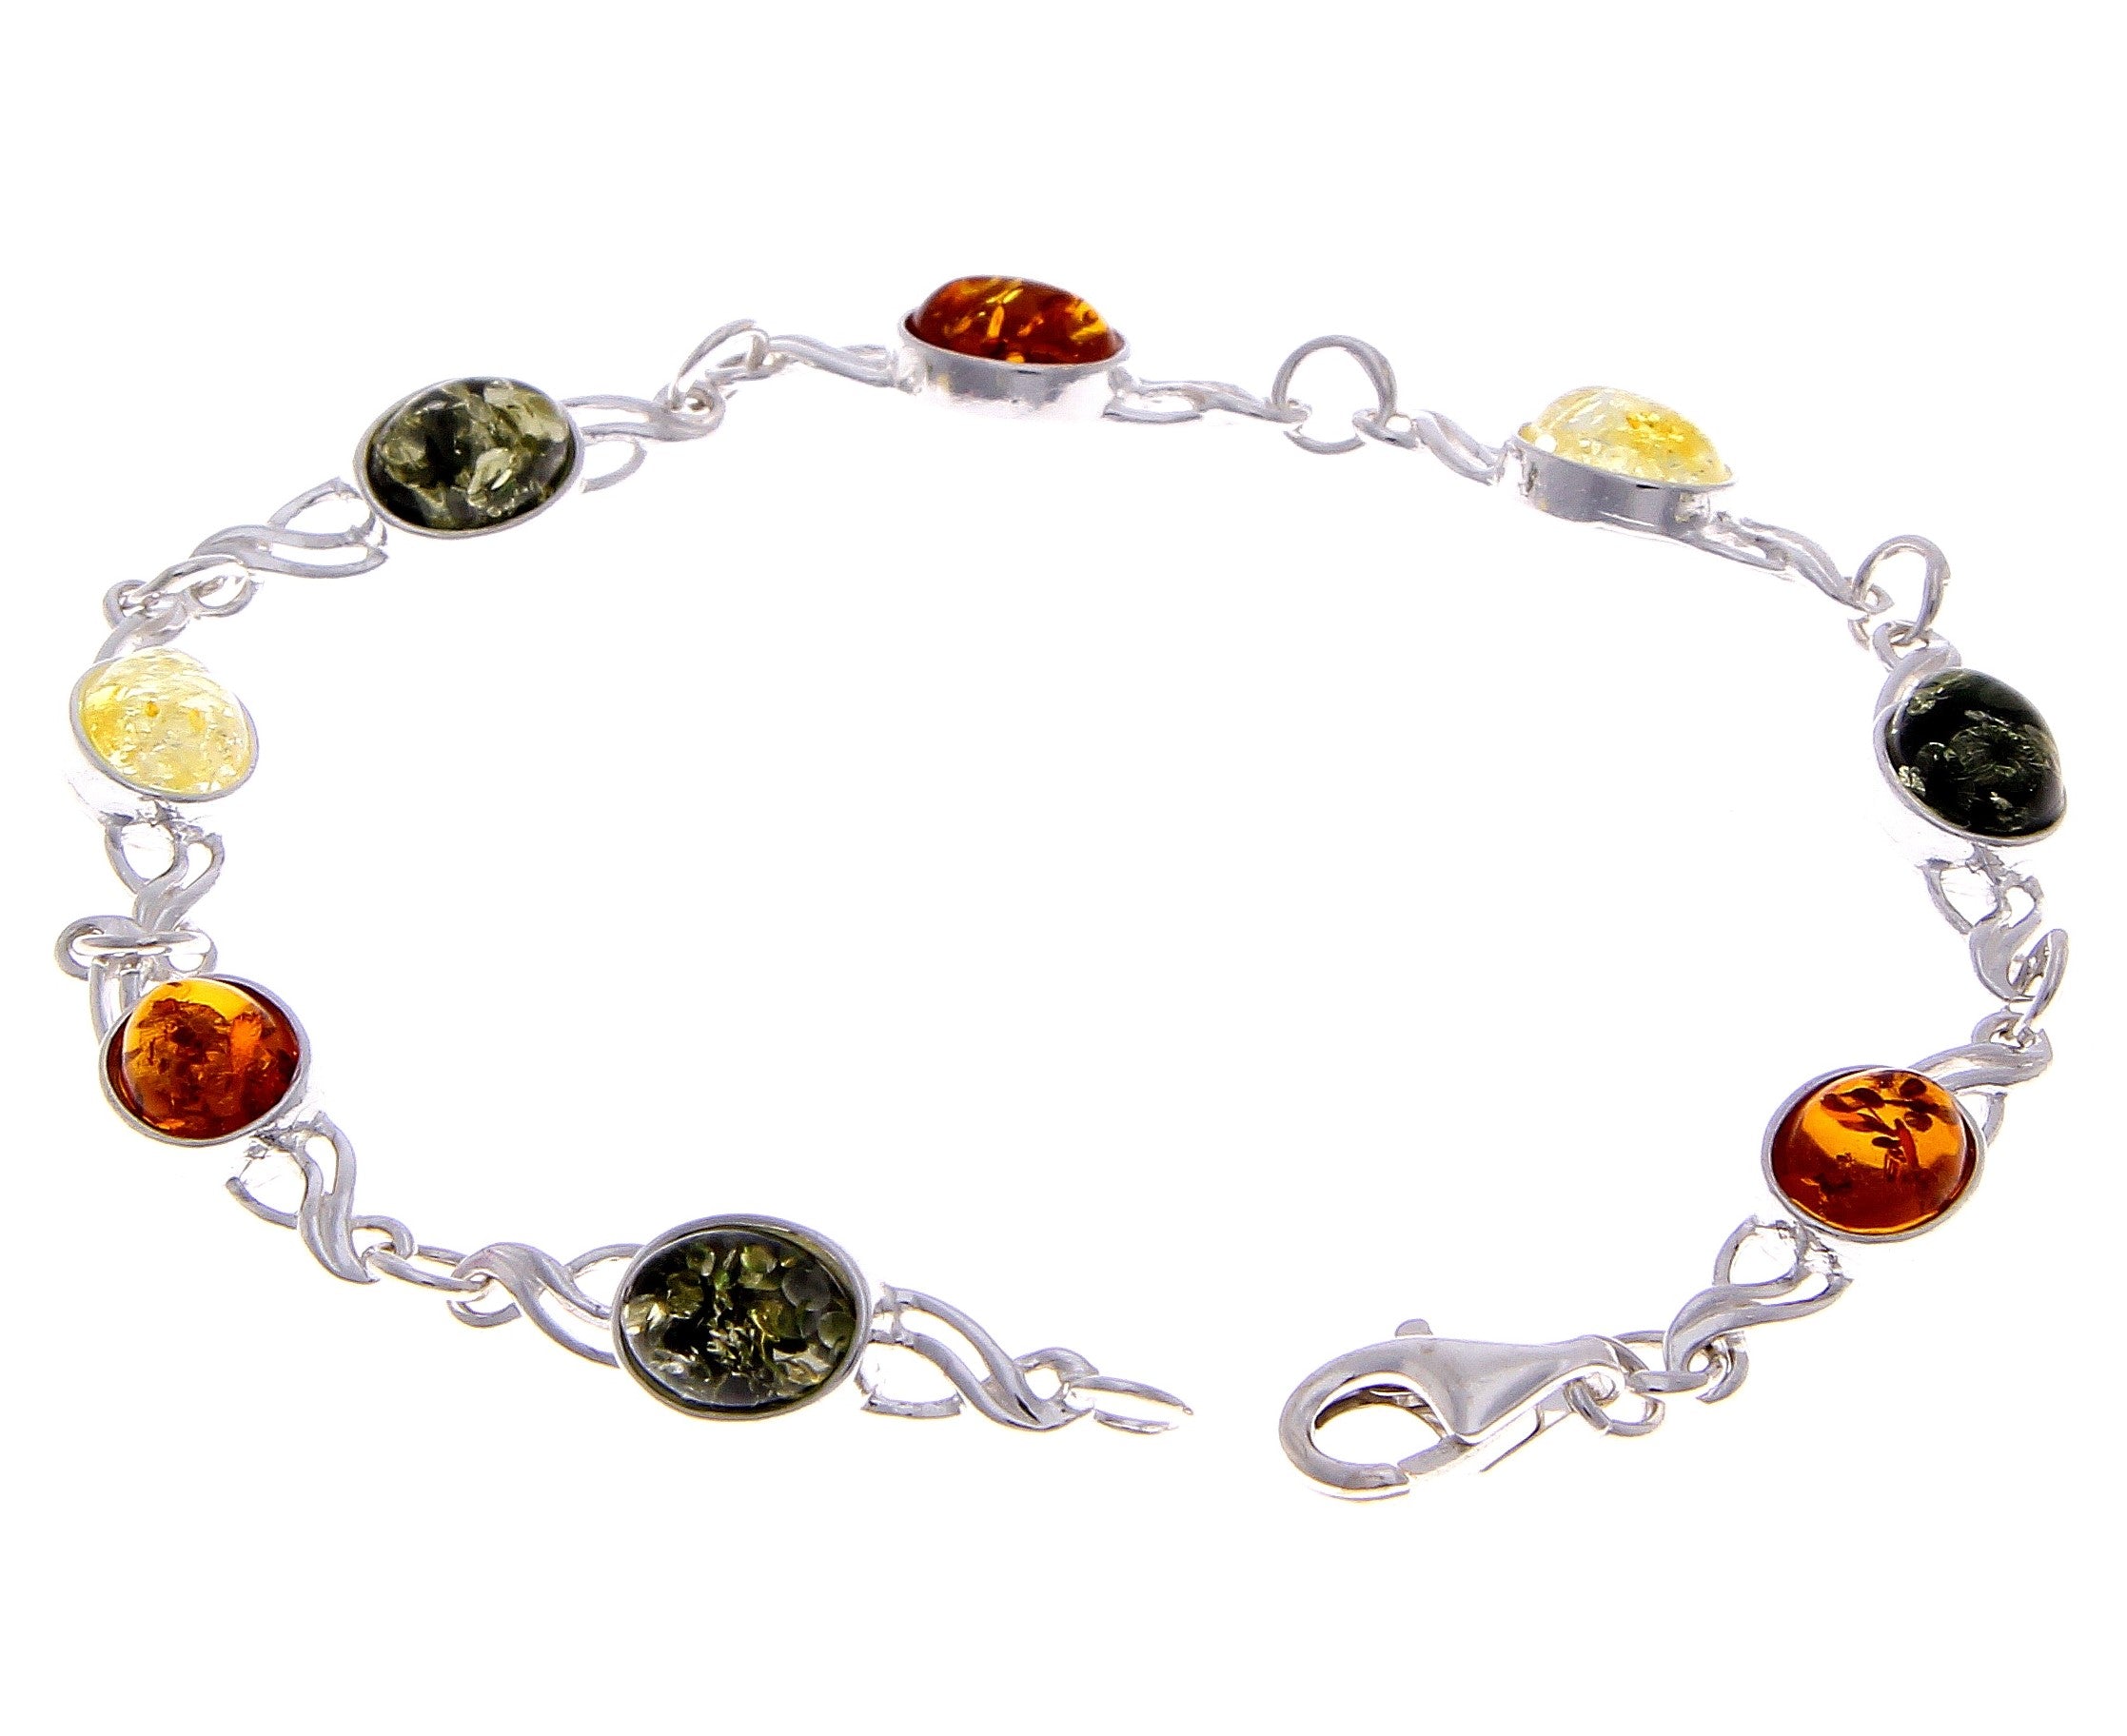 925 Sterling Silver & Genuine Baltic Amber Bracelet Link 21.5 cm  - 3178